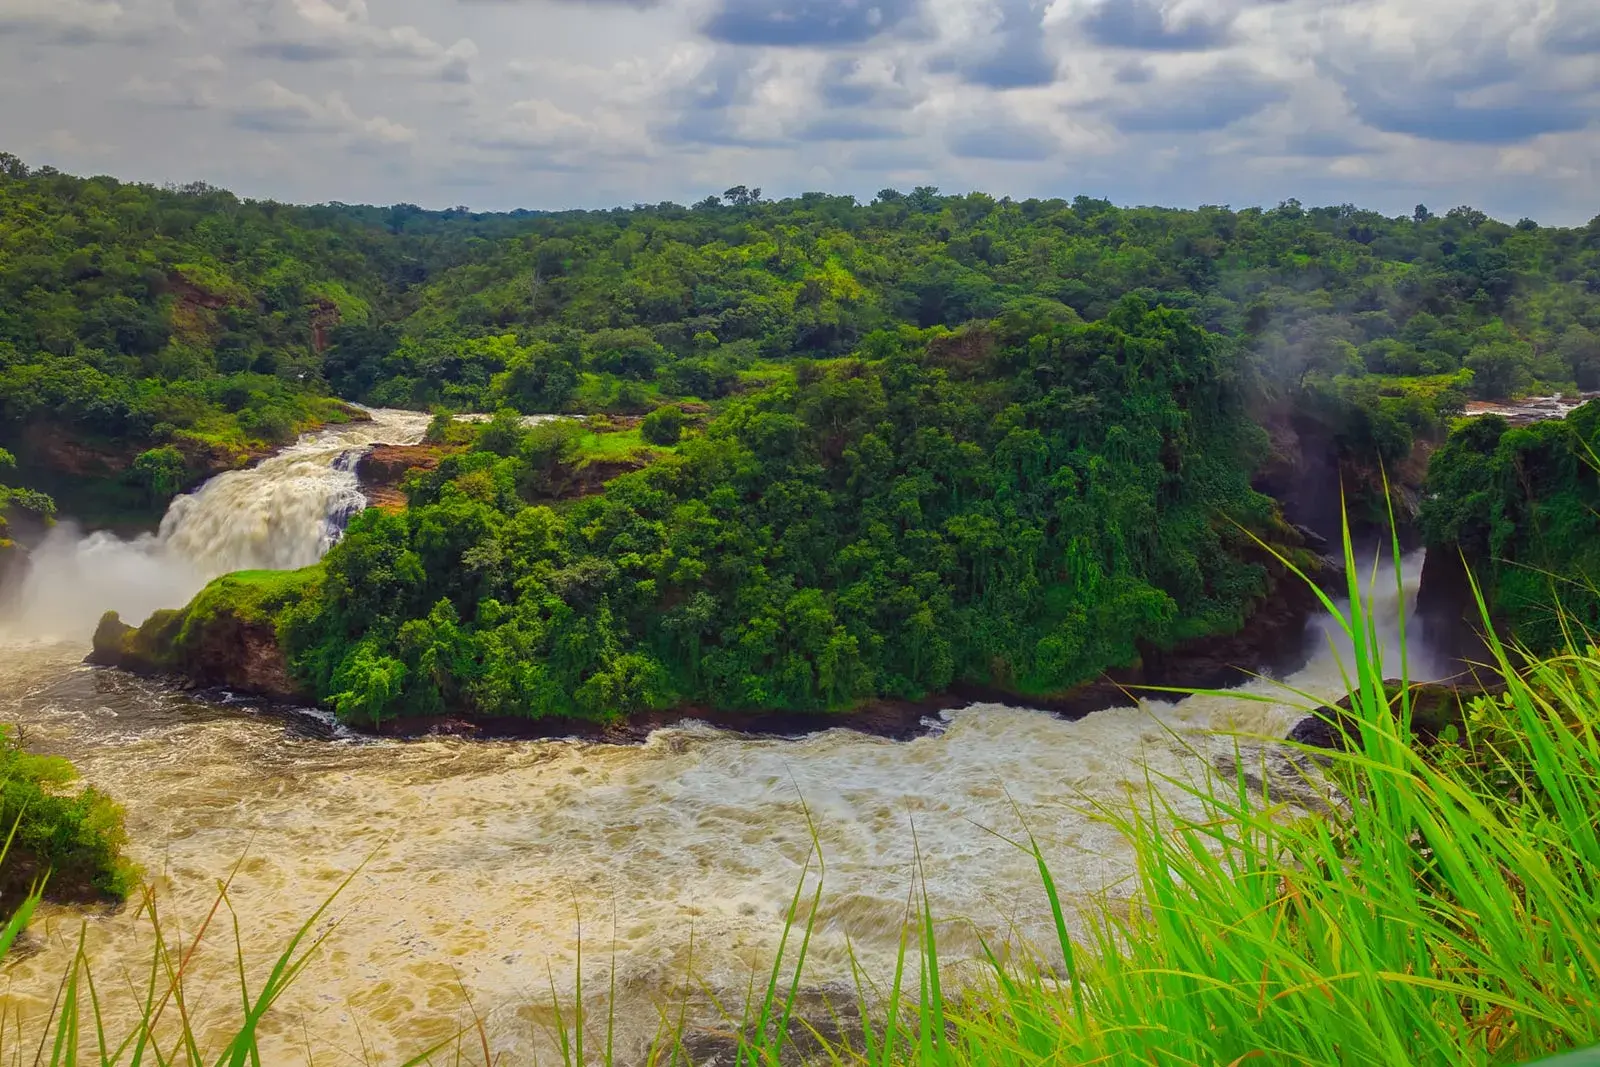 Visiting the Murchison Falls on Uganda Safari - The scenic Murchison Falls